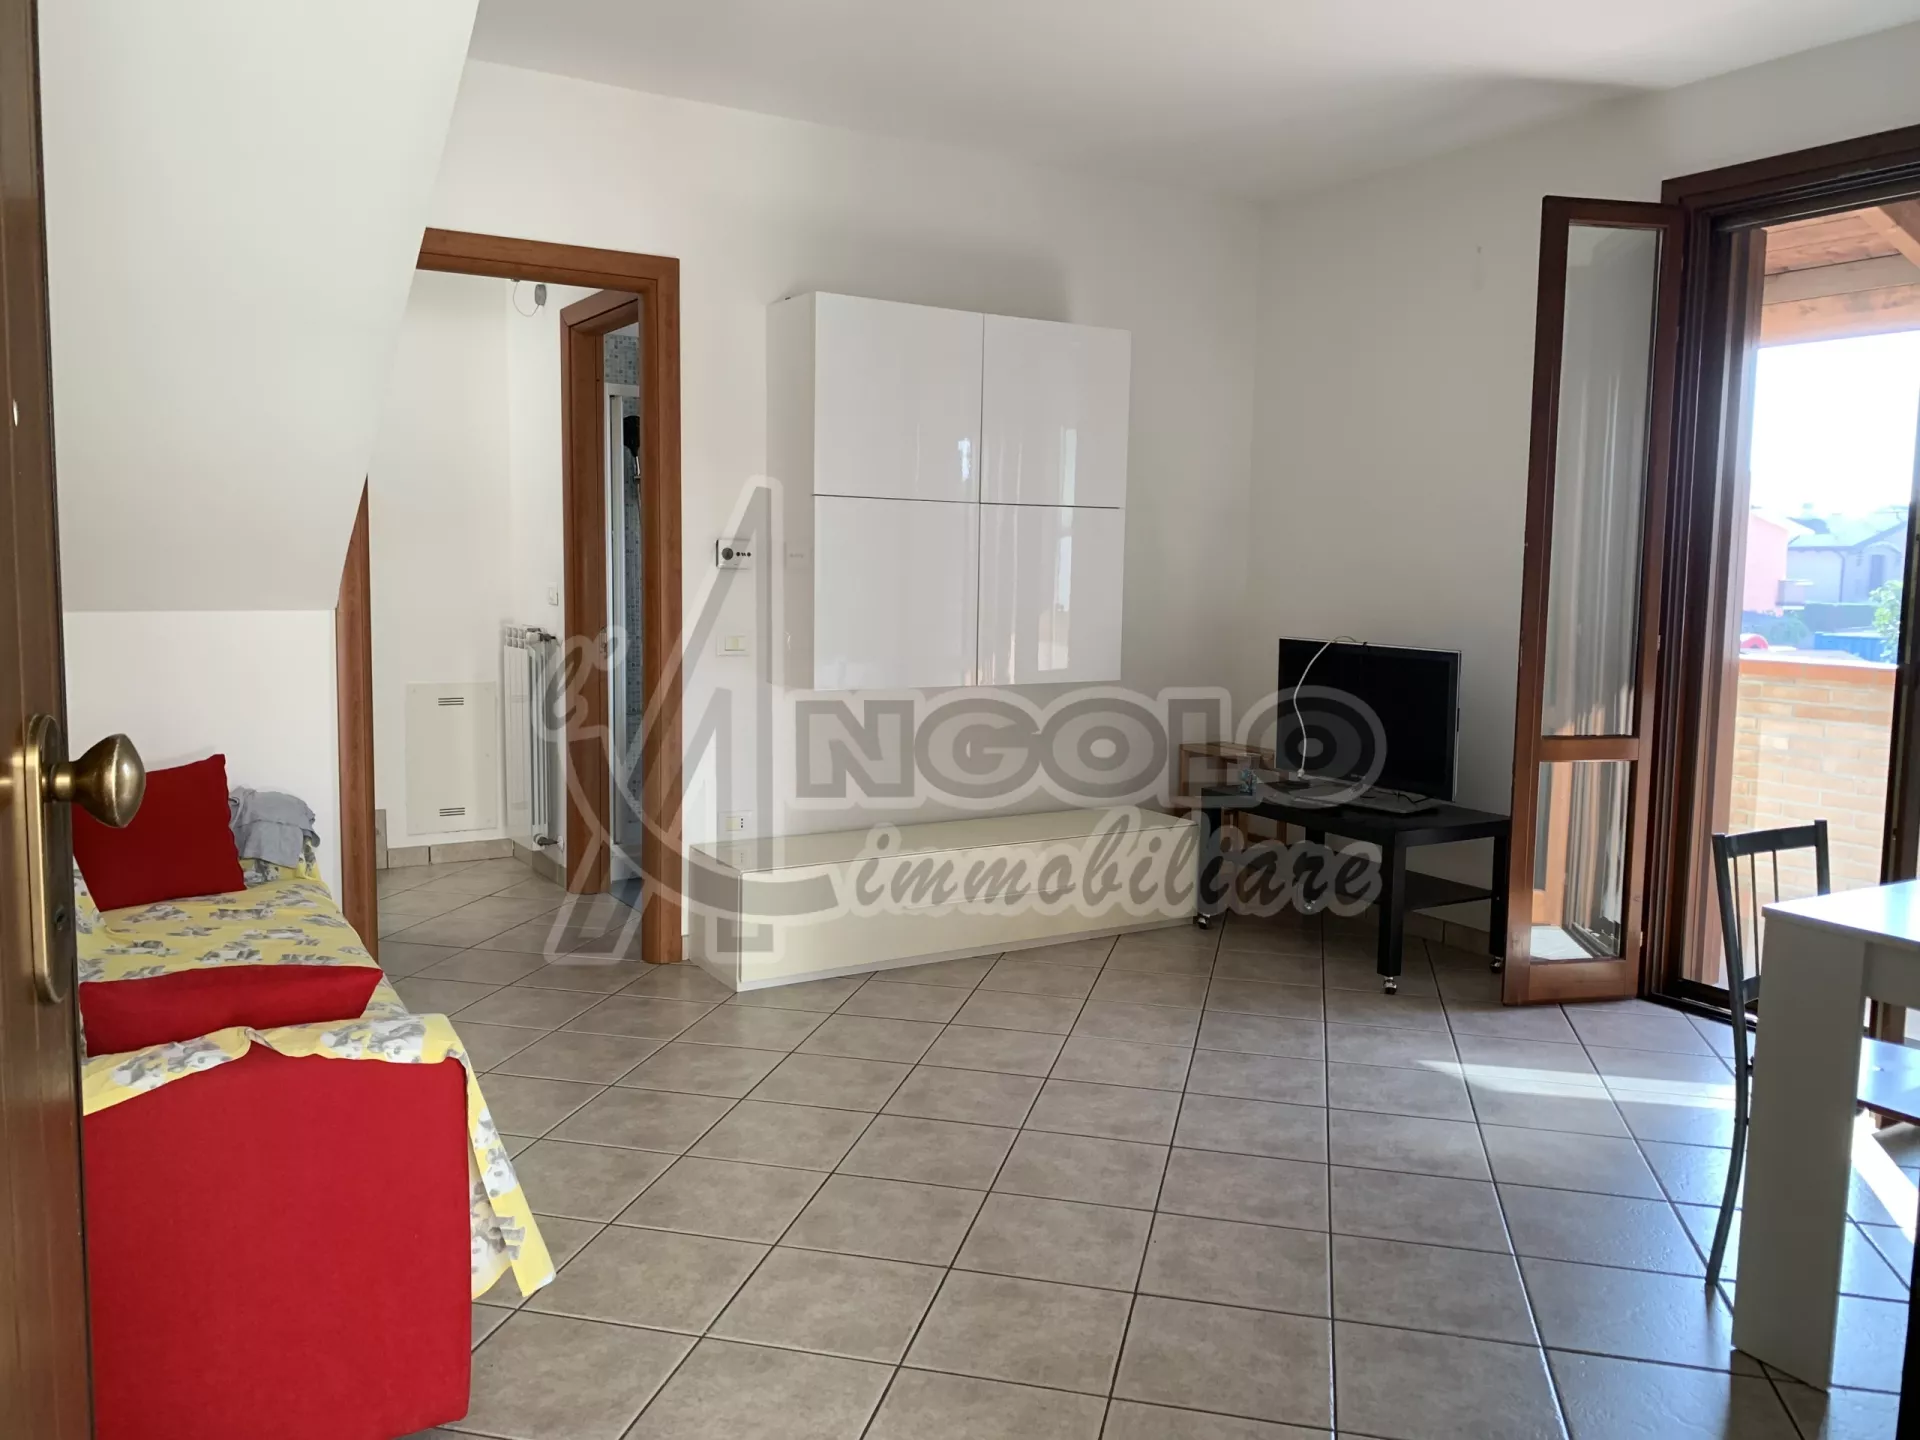 Immagine per Appartamento in vendita a Occhiobello via Enrico Berlinguer 12